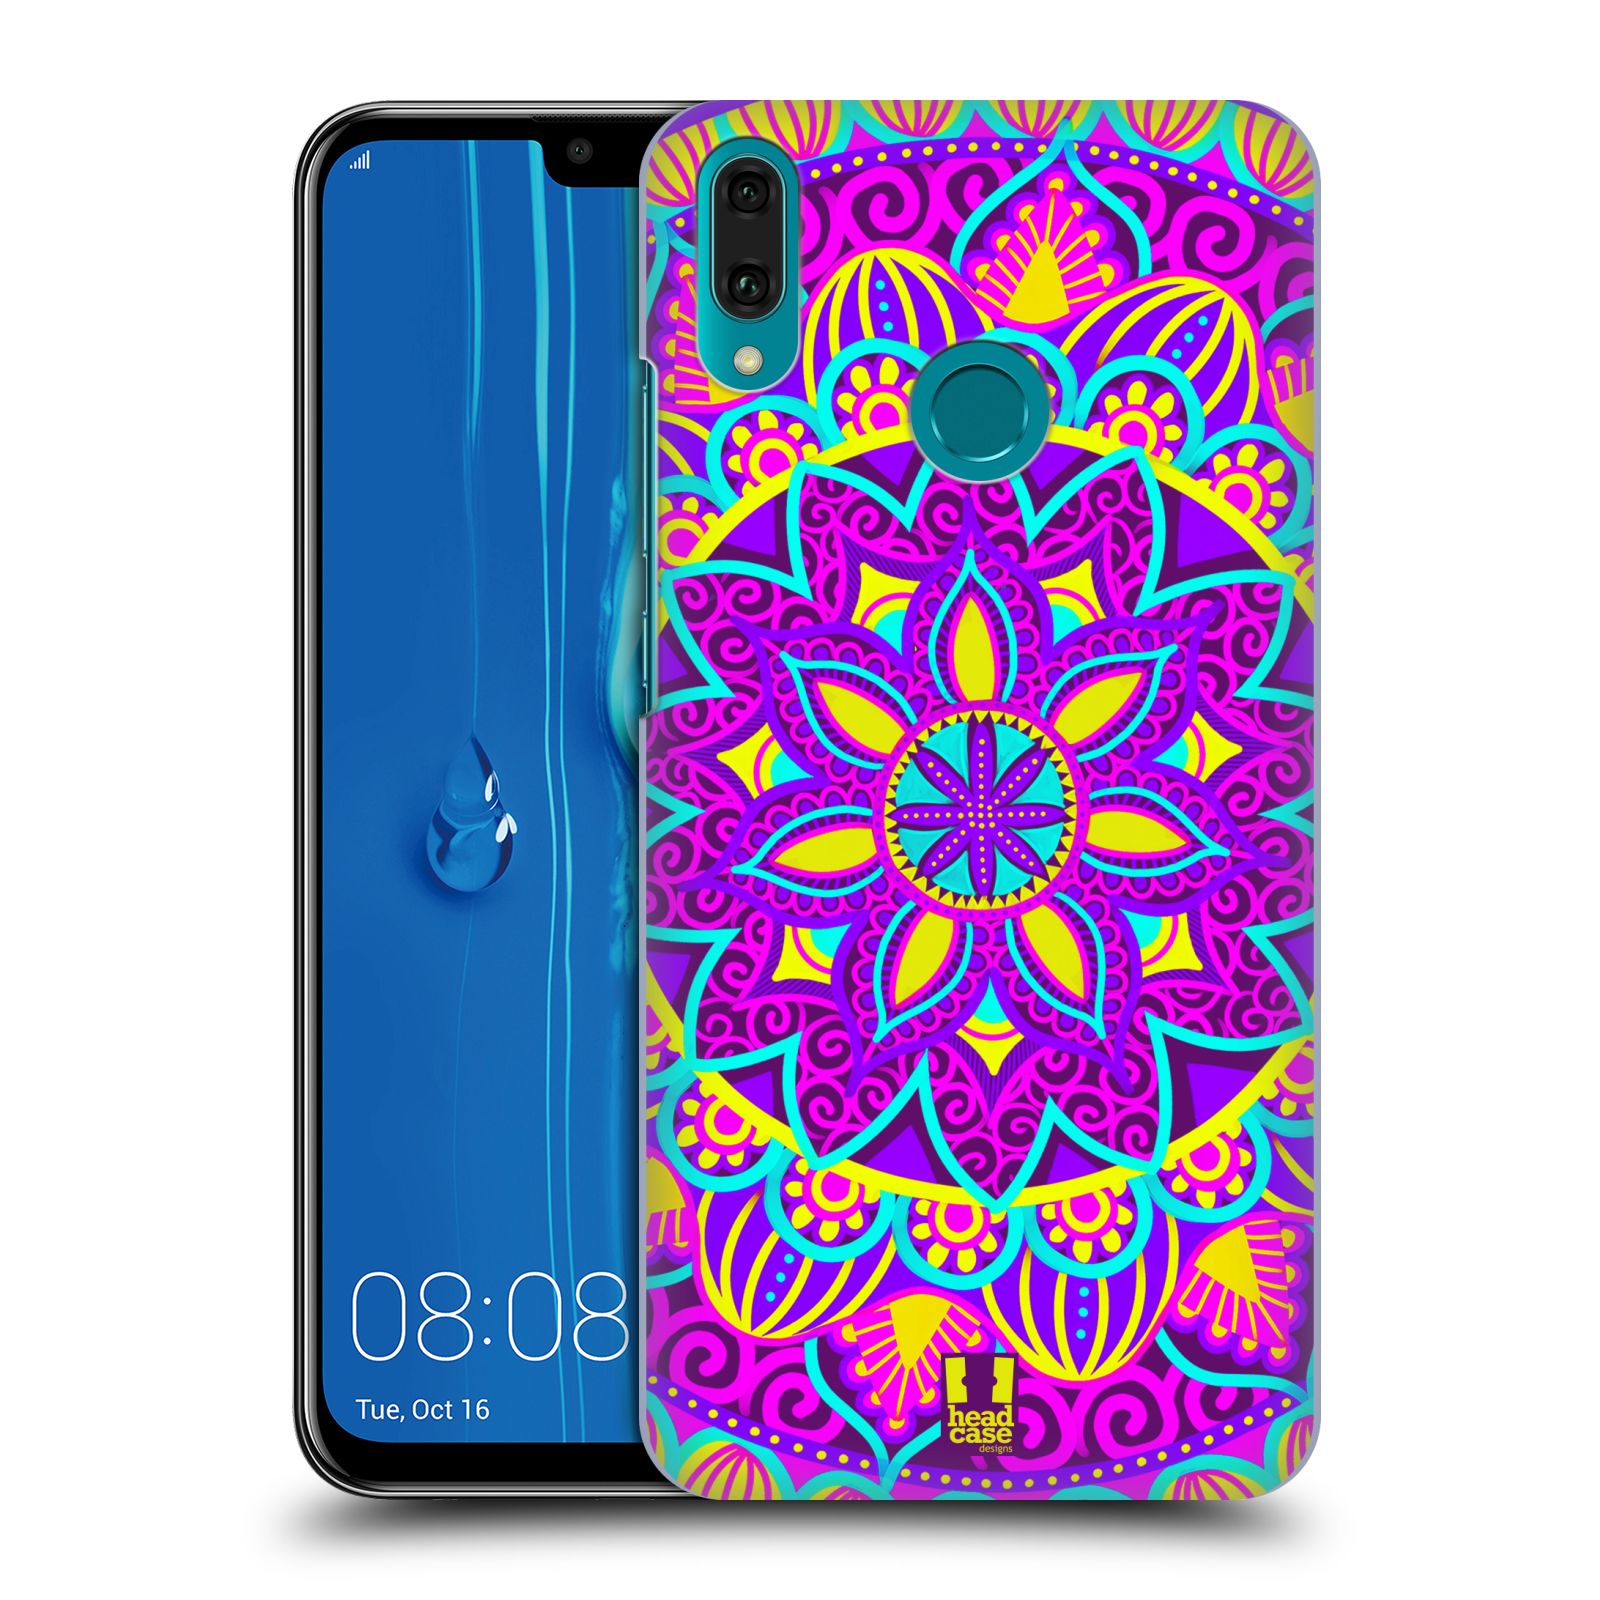 Pouzdro na mobil Huawei Y9 2019 - HEAD CASE - vzor Indie Mandala květinový motiv FIALOVÁ KVĚTINA